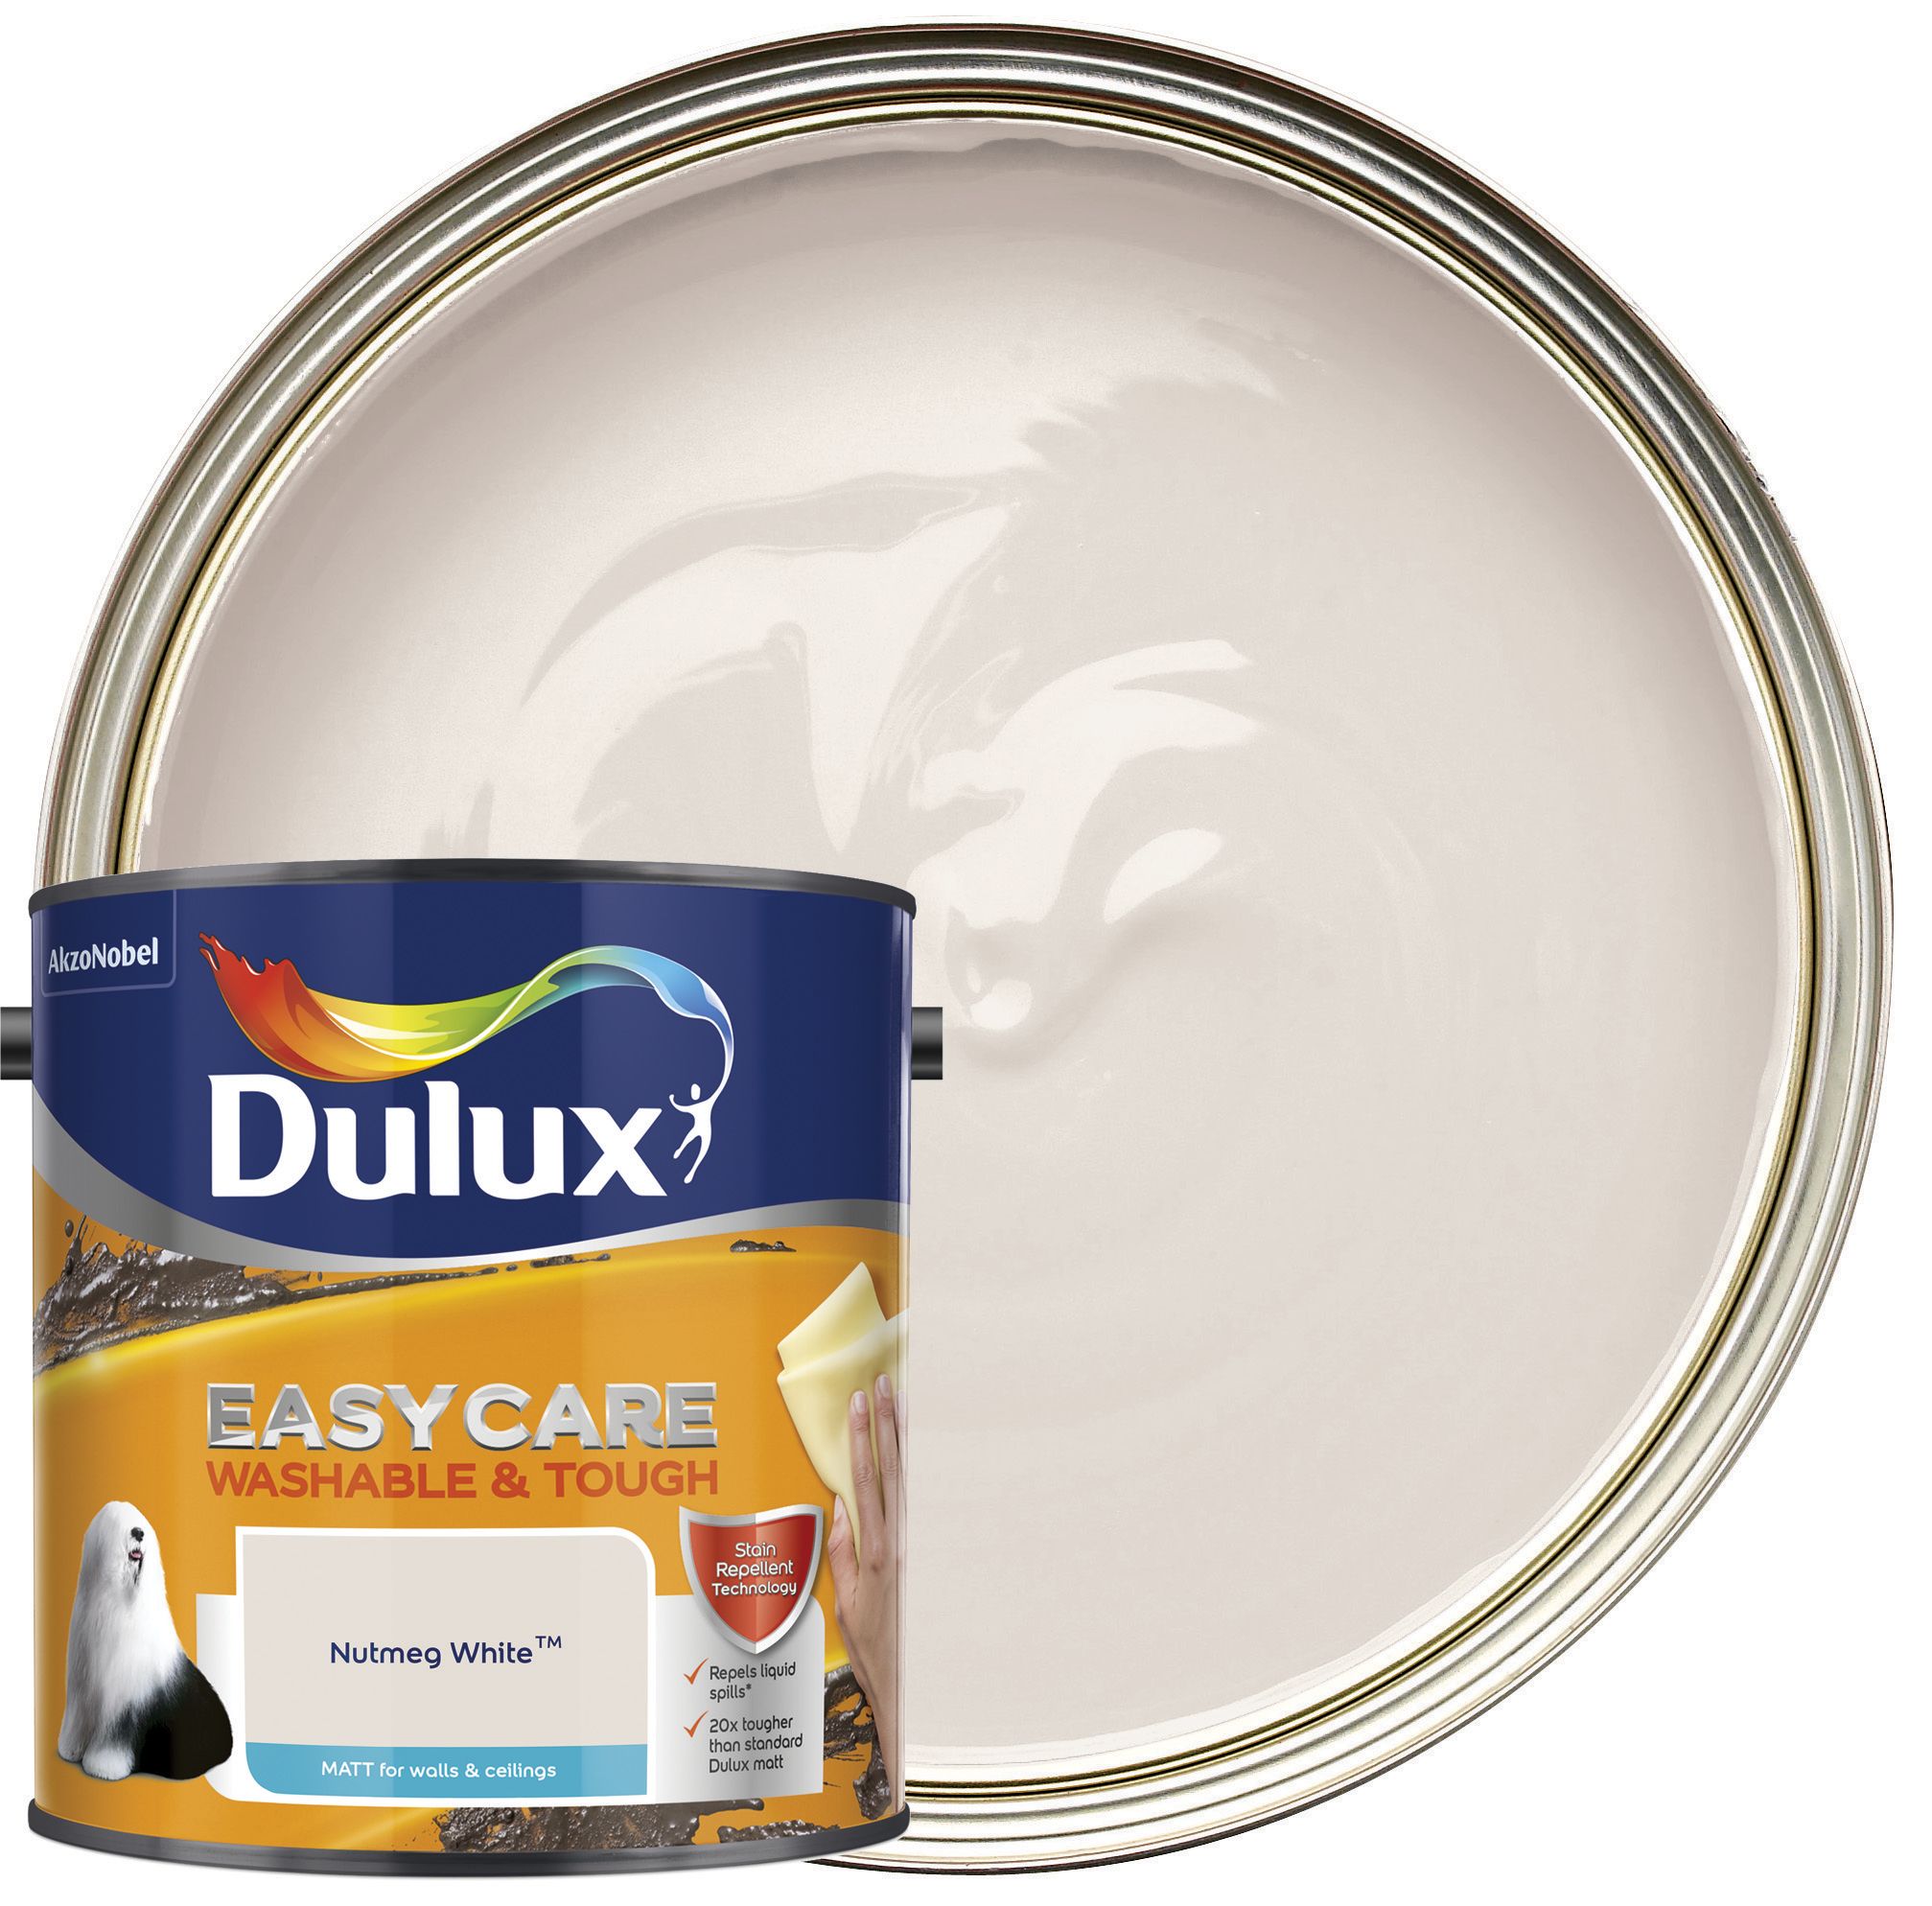 Dulux Easycare Washable & Tough Matt Emulsion Paint - Nutmeg White - 2.5L